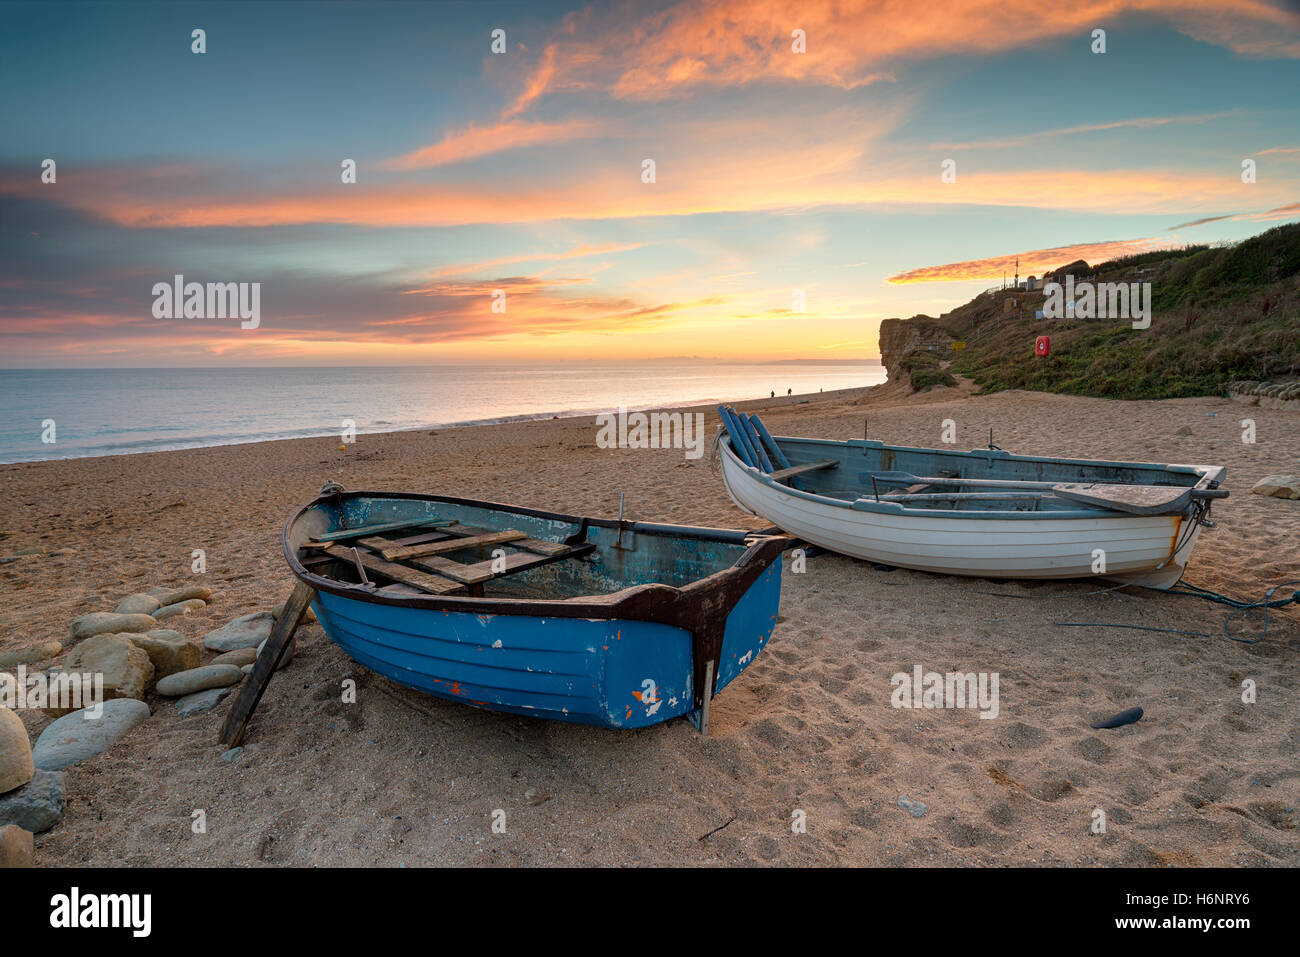 Stunning sunset over fishing boats on the beach at Burton Bradstock near Bridport on the Dorset coast Stock Photo